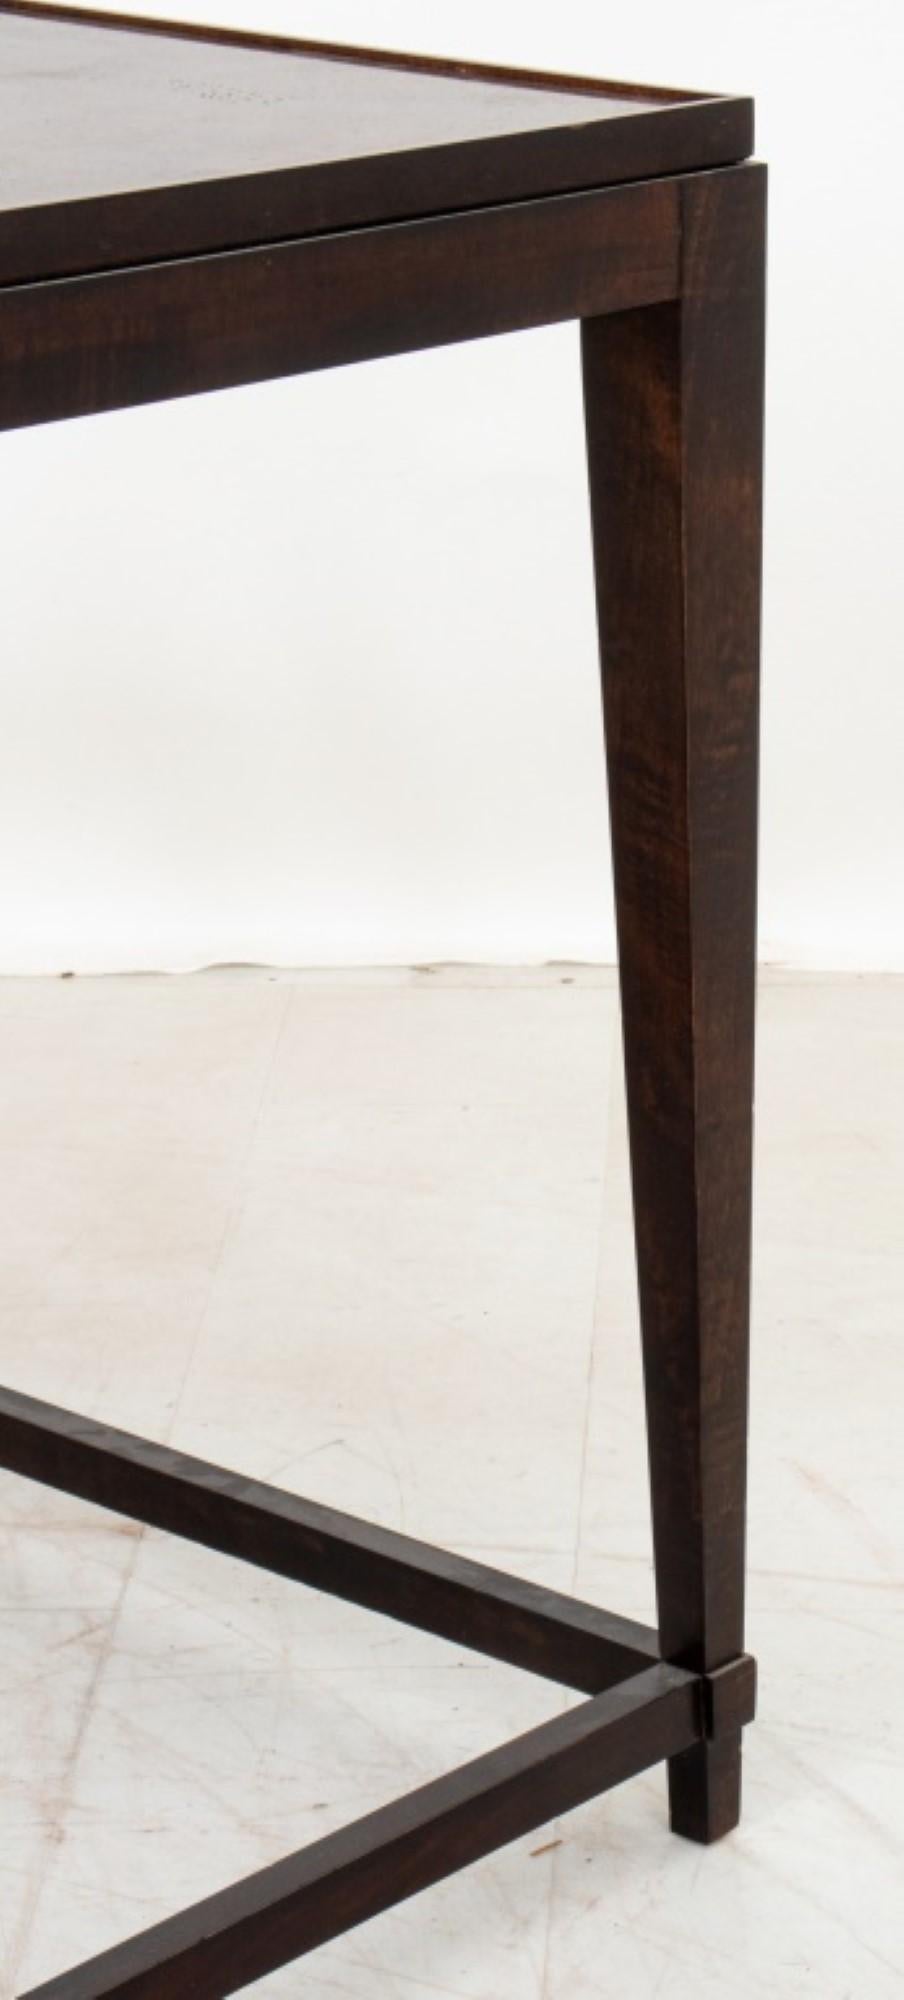 Les tables gigognes en bois de bourgogne de style Art déco, composées de deux tables et datant du 20e siècle, ont une hauteur approximative de 2,5 mètres. Ces tables présentent les caractéristiques du style Art déco, avec du bois de ronce, et